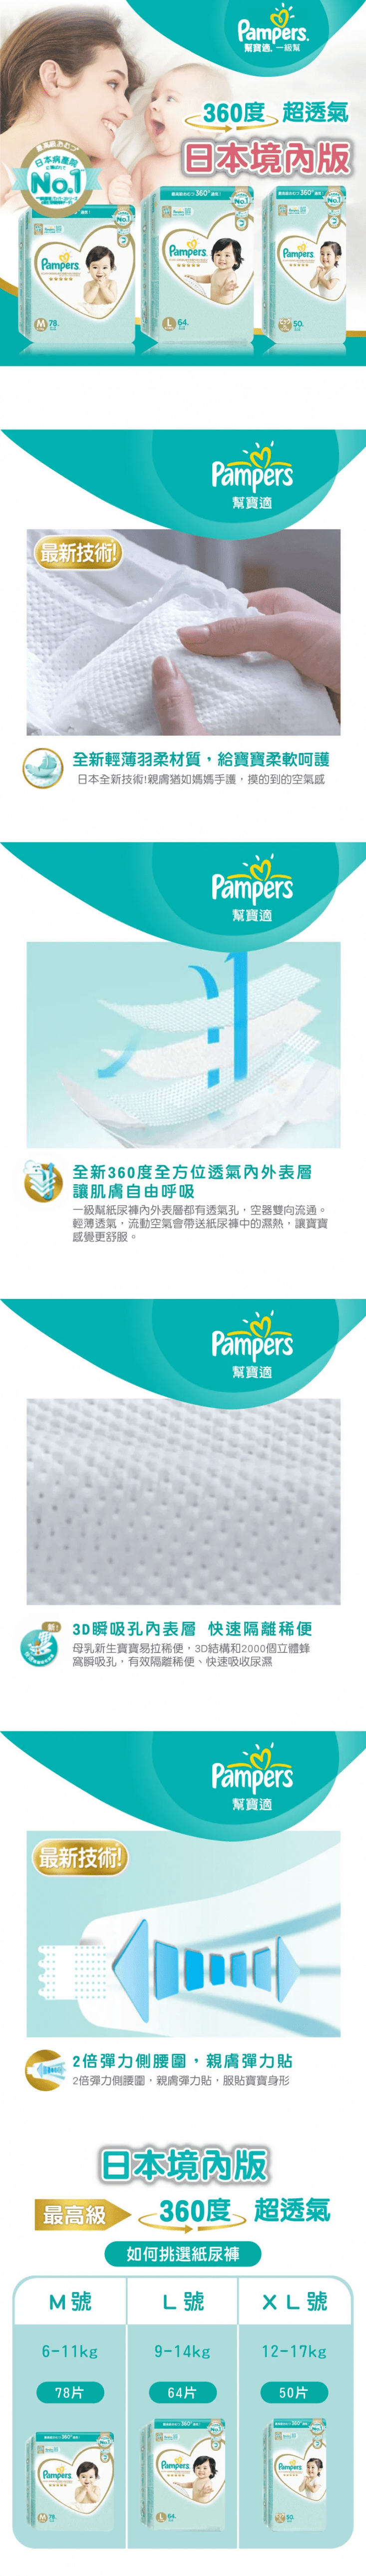 【日本幫寶適】黏貼型一級幫尿布(M/L/XL) 嬰童紙尿褲/紙尿布/日本境內版